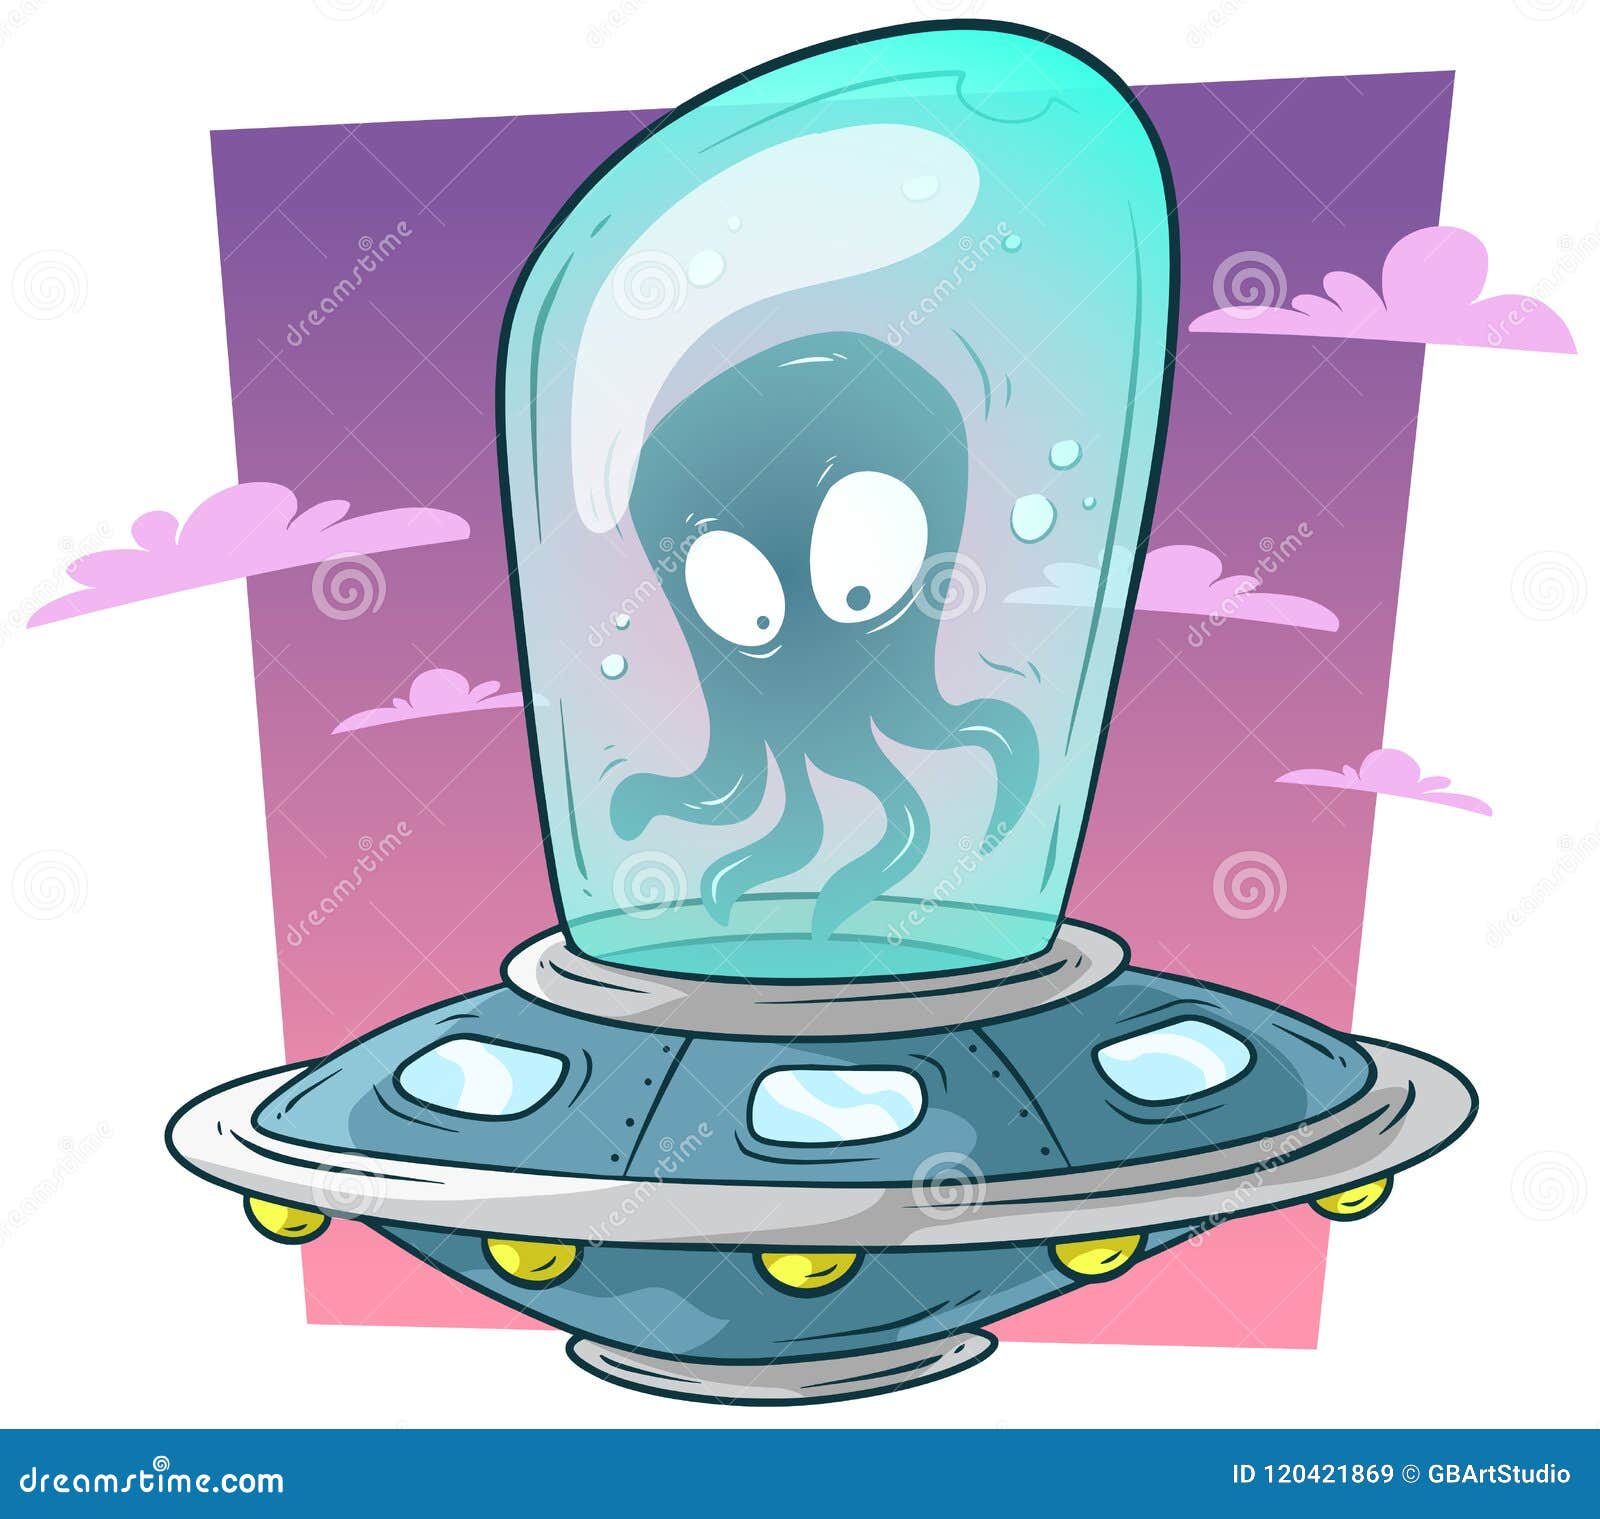 Alien bonito com ilustração vetorial de desenho animado de telefone.